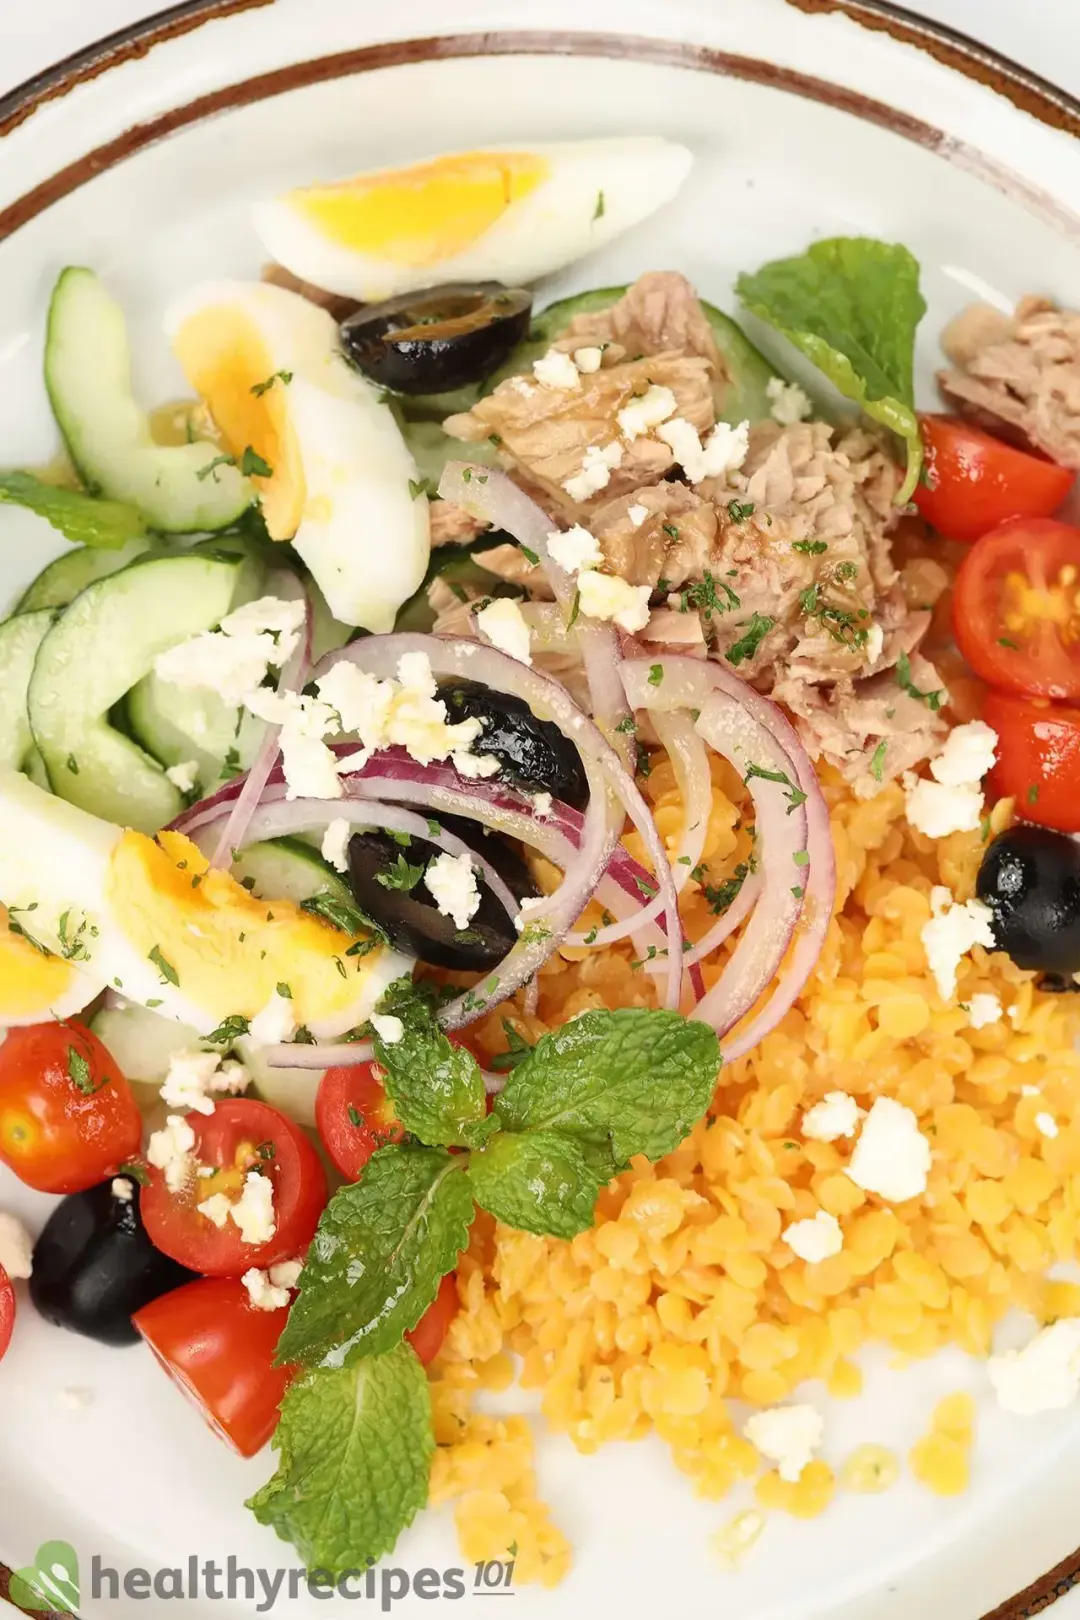 Is Lentil Salad Healthy